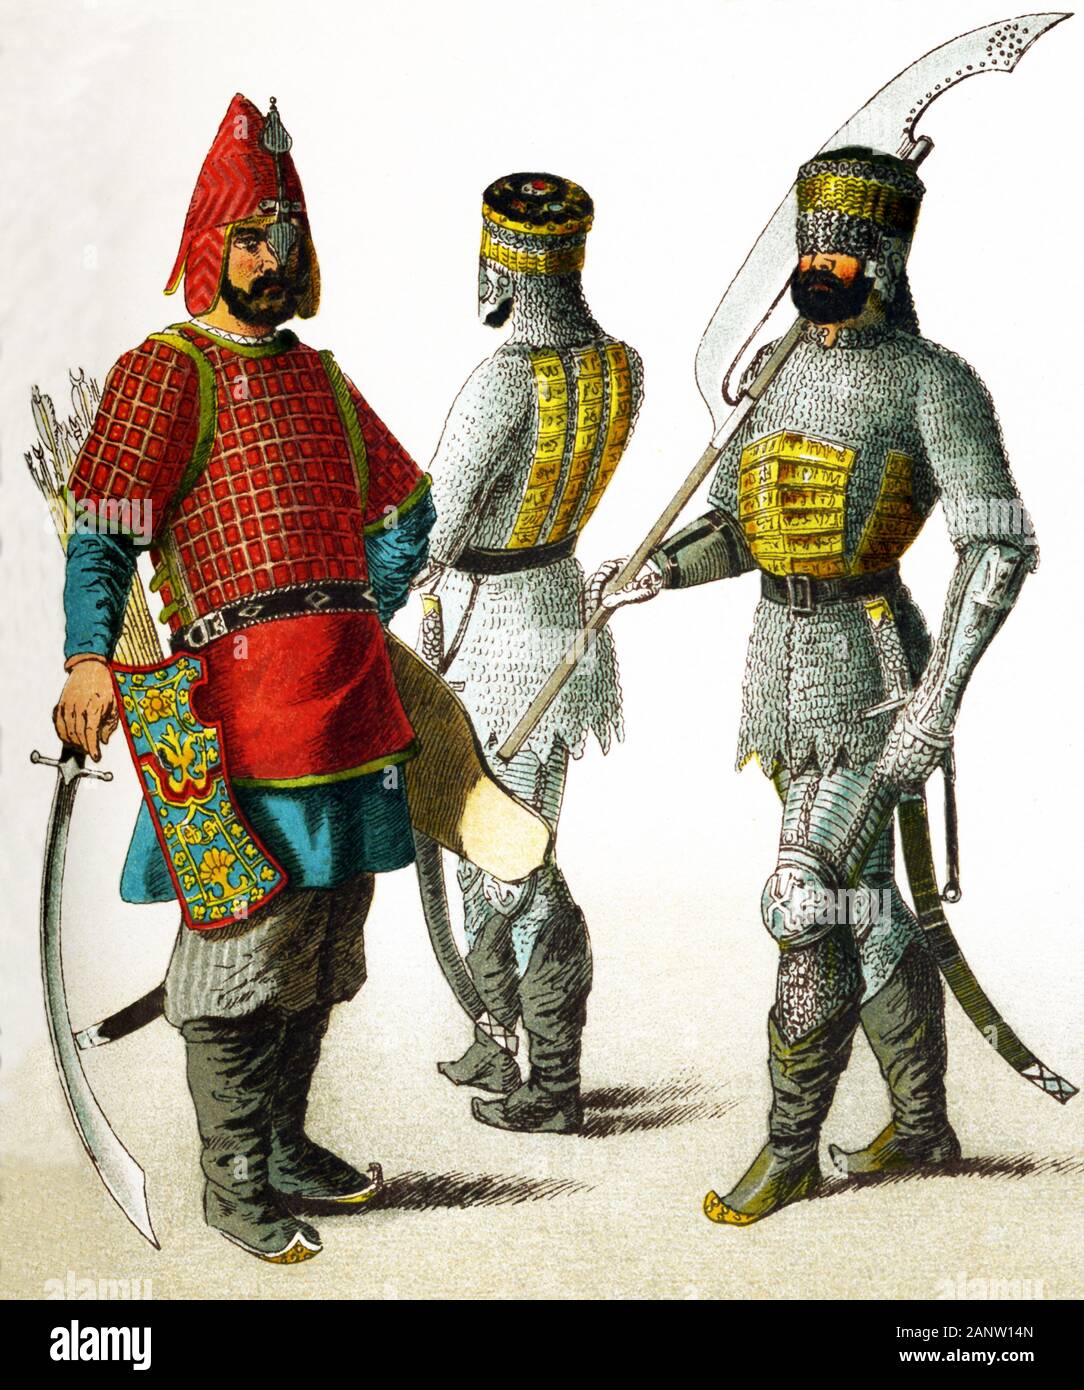 Le figure qui rappresentano guerrieri slava in A.D. 1400. Essi sono, da sinistra a destra: tre guerrieri russo. L'illustrazione risale al 1882. Foto Stock